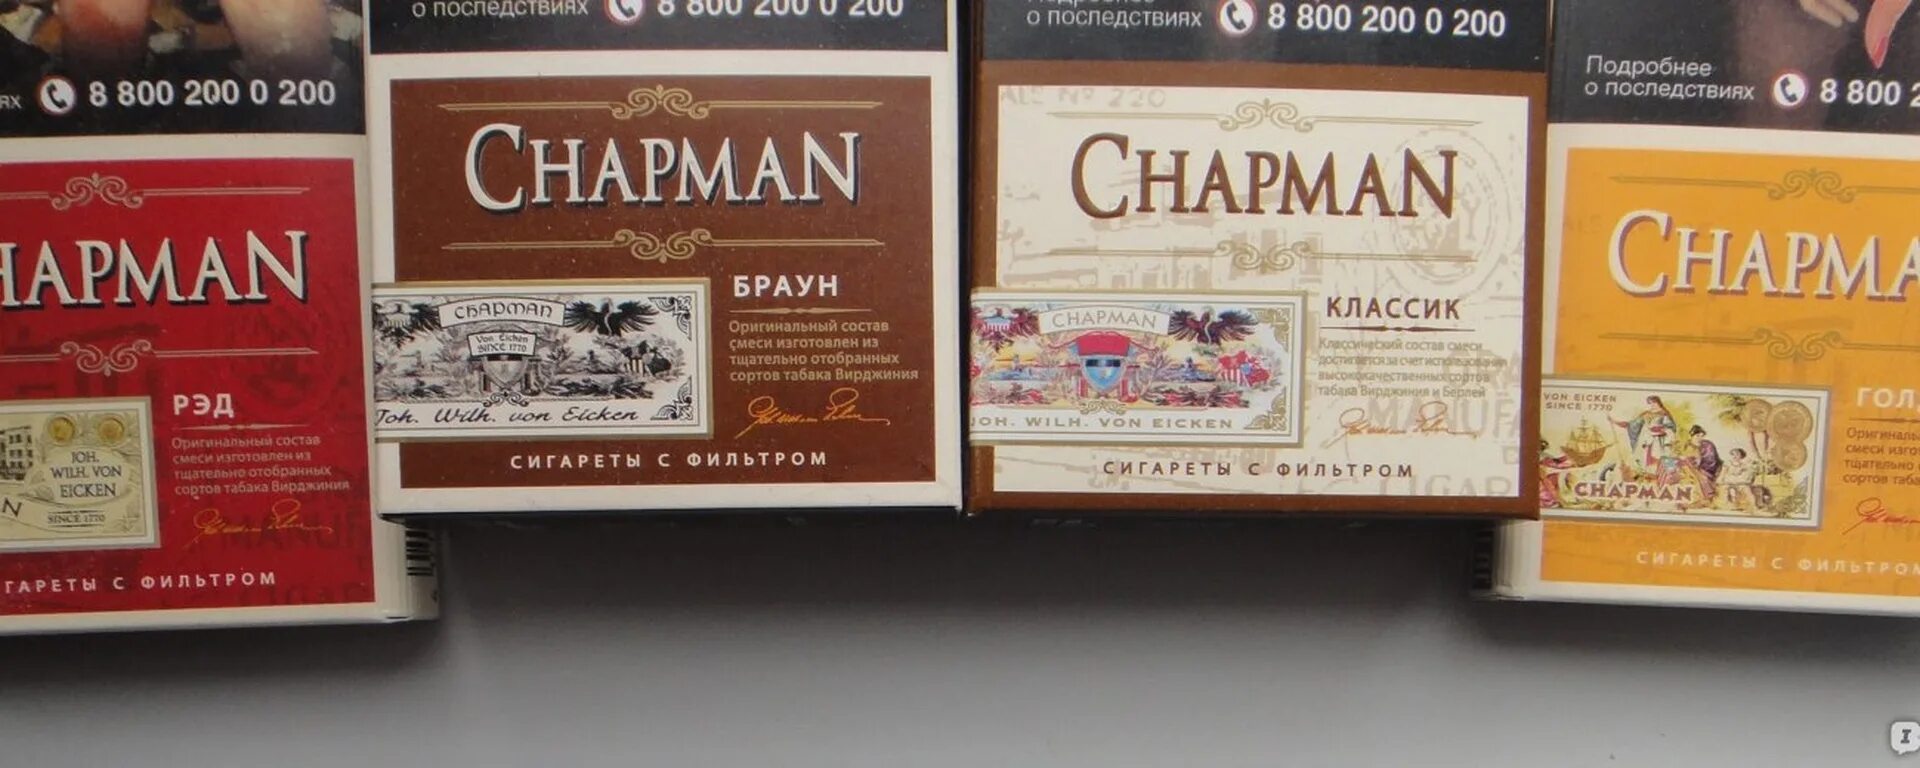 Чапмен вкусы. Чапман сигареты черри. Чапман Браун сигареты вкус. Chapman сигареты вкусы Браун. Chapman сигареты классика.